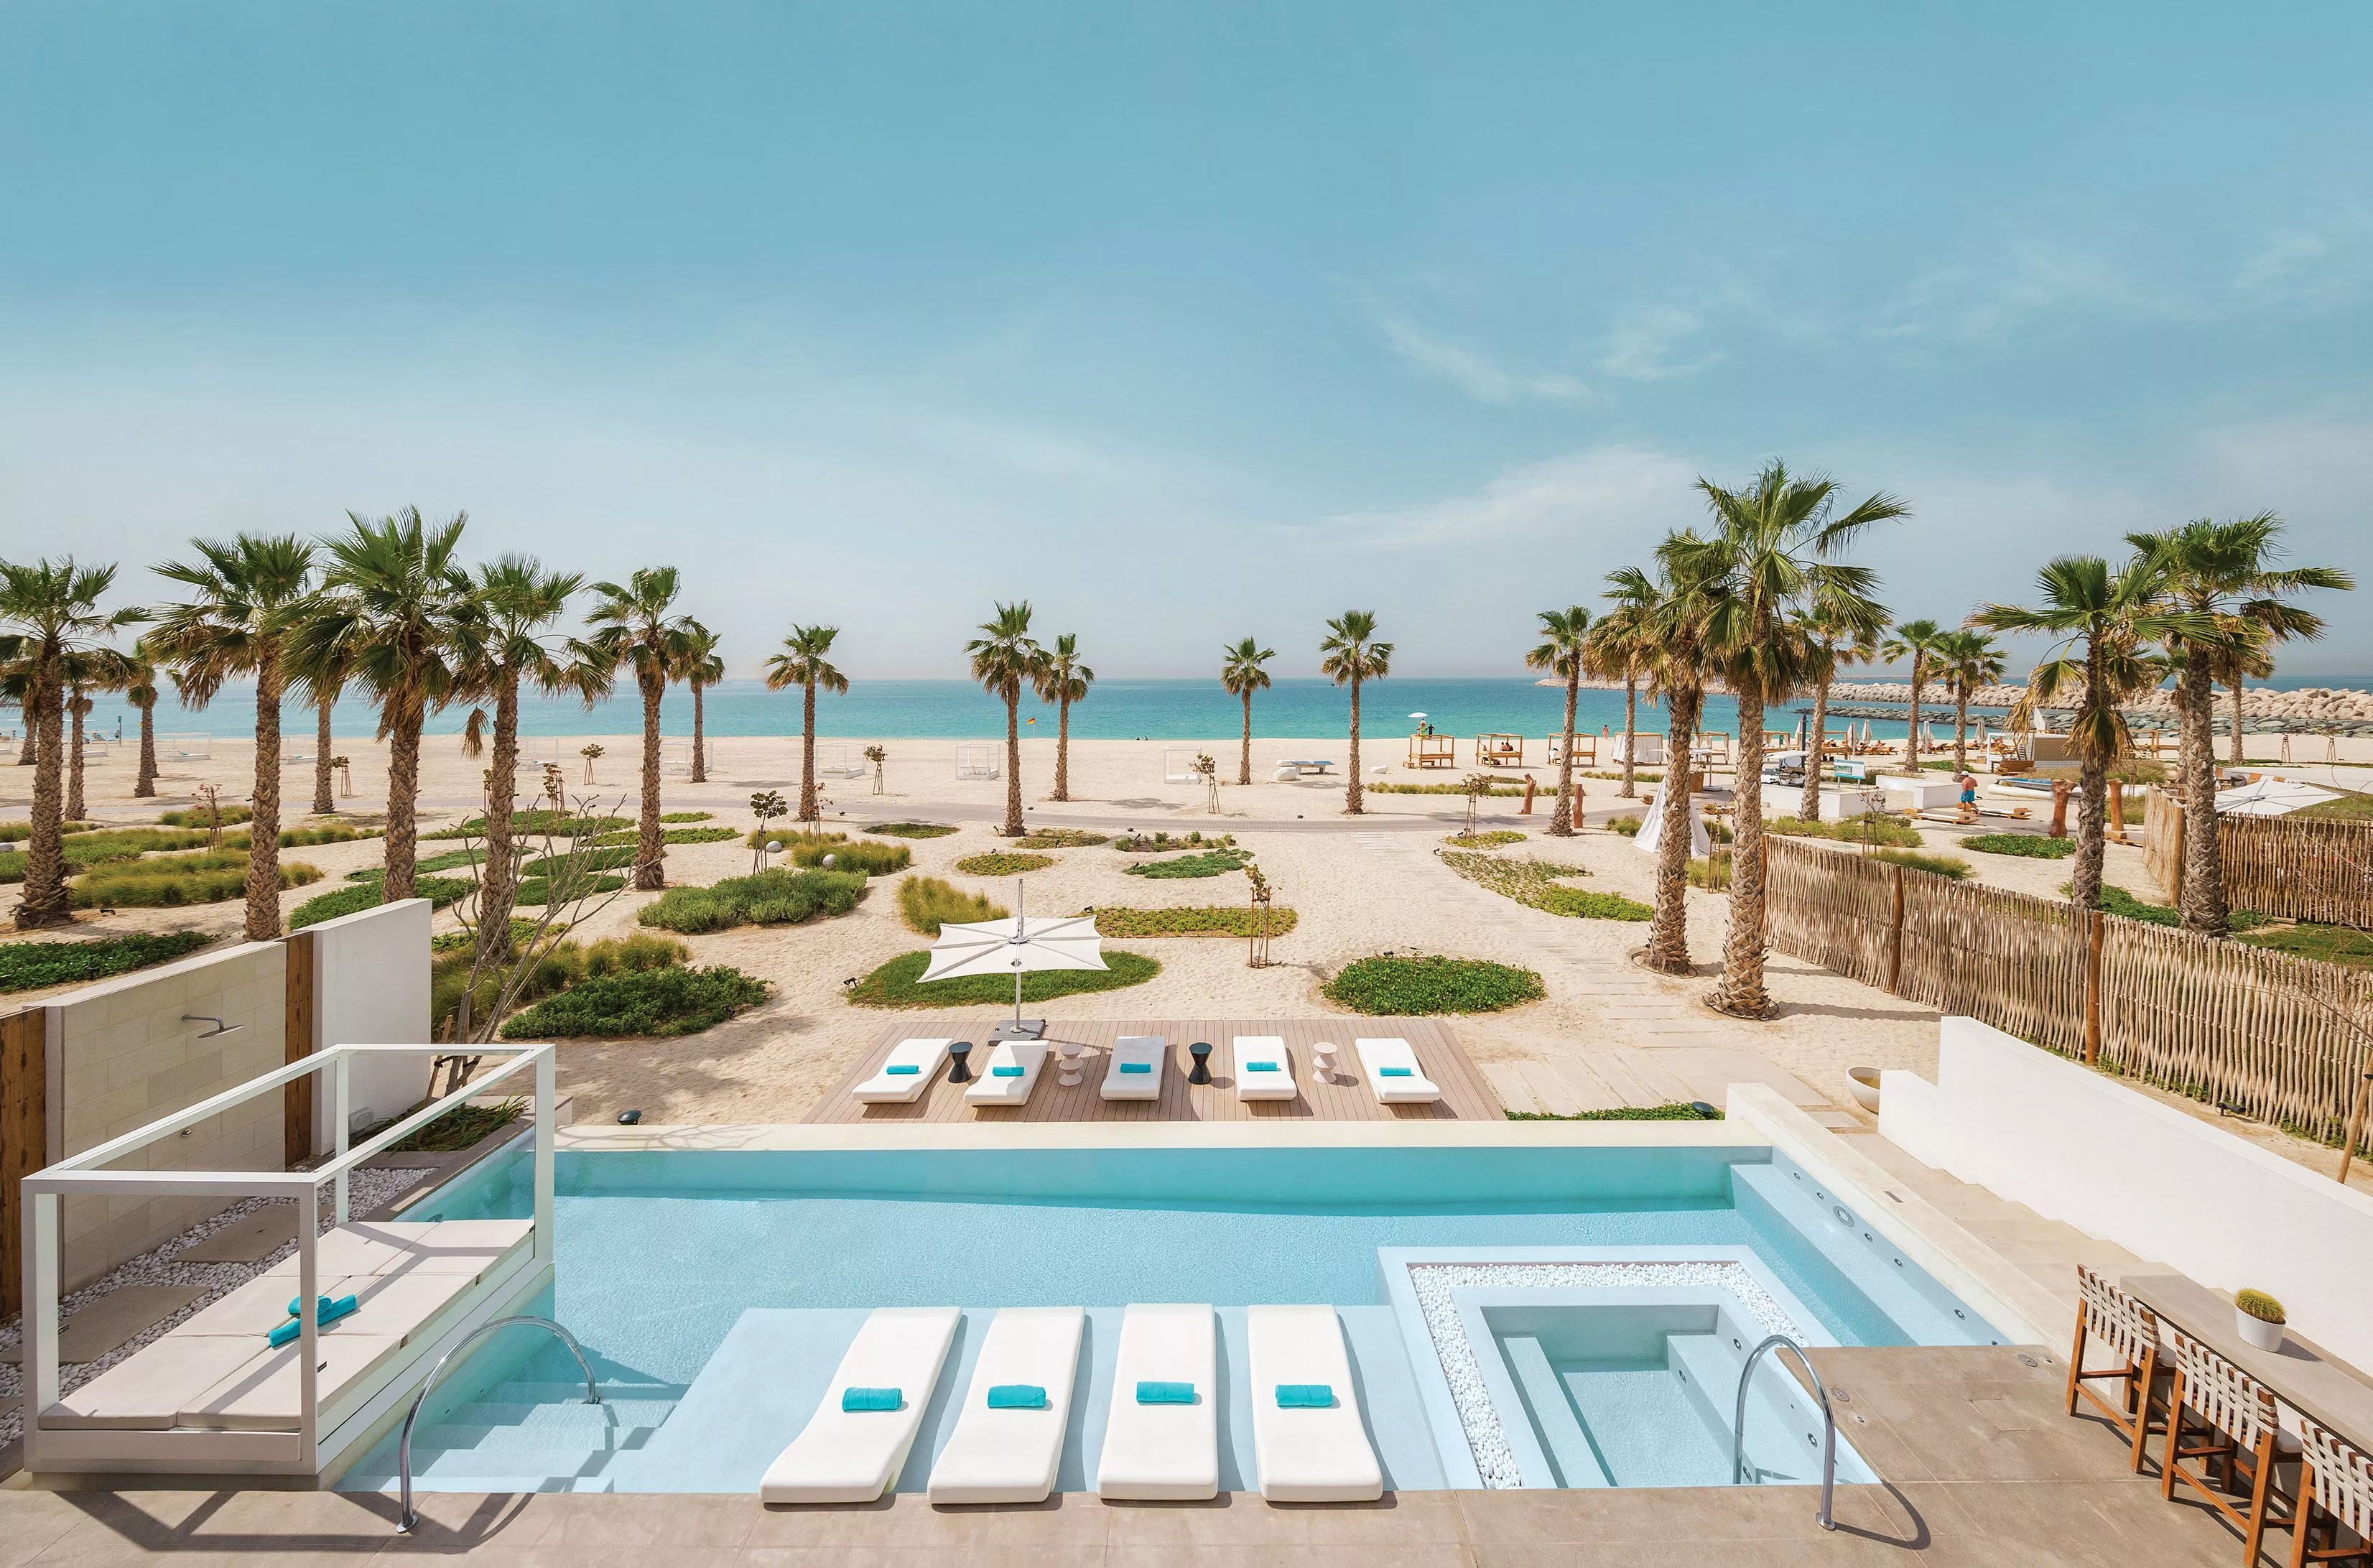 منتجع Nikki Beach في دبي: إقامة عنوانها الفخامة وخصوصية تامة للزائرين